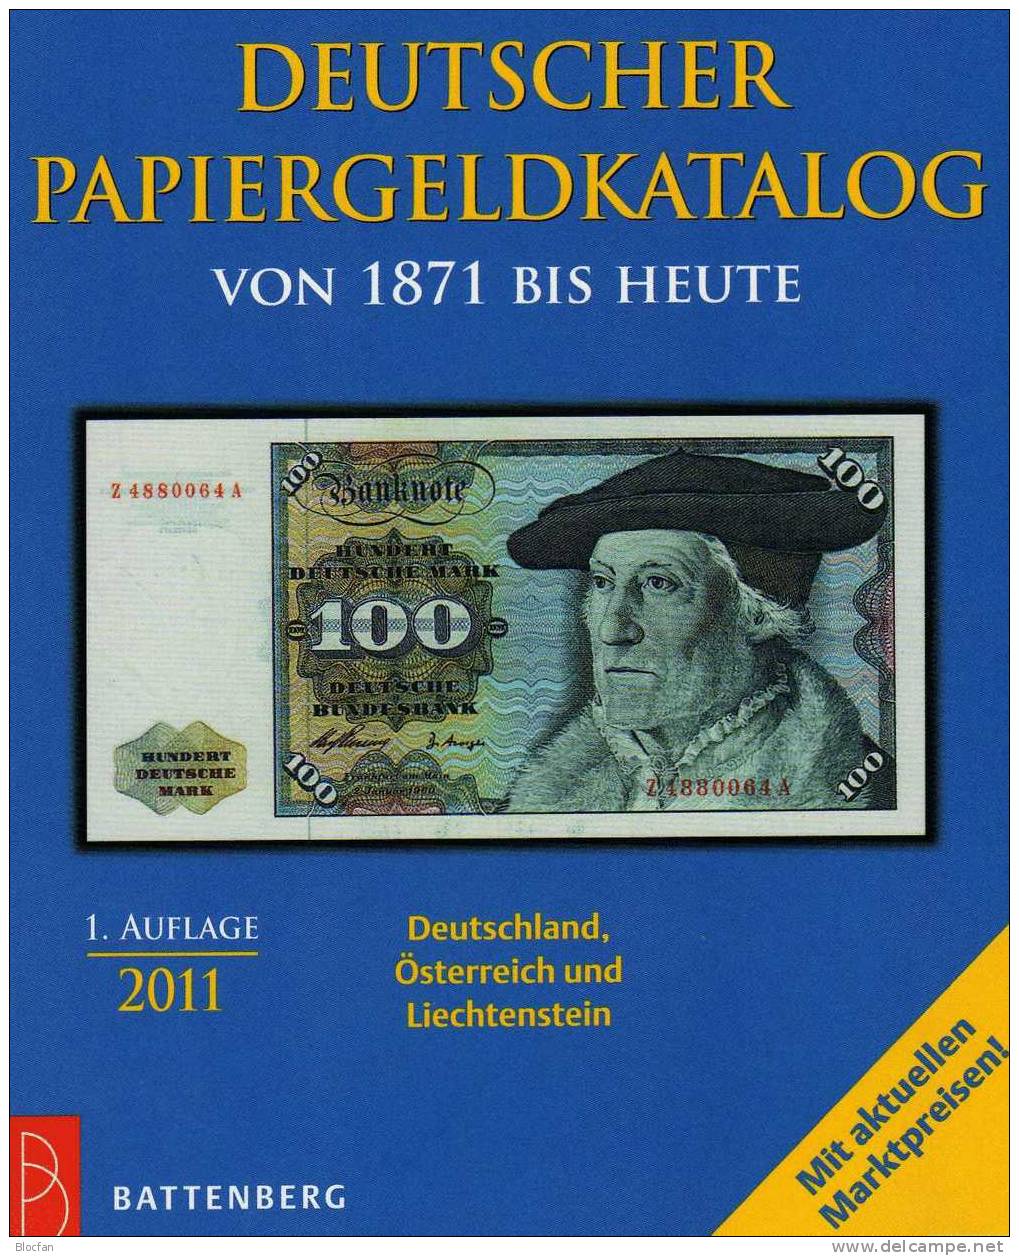 Banknoten Katalog Deutschland 2011 New 12€ Für Papiergeld Neue Auflage EURO-Banknoten Grabowski Battenberg Of Catalogue - Sammlungen